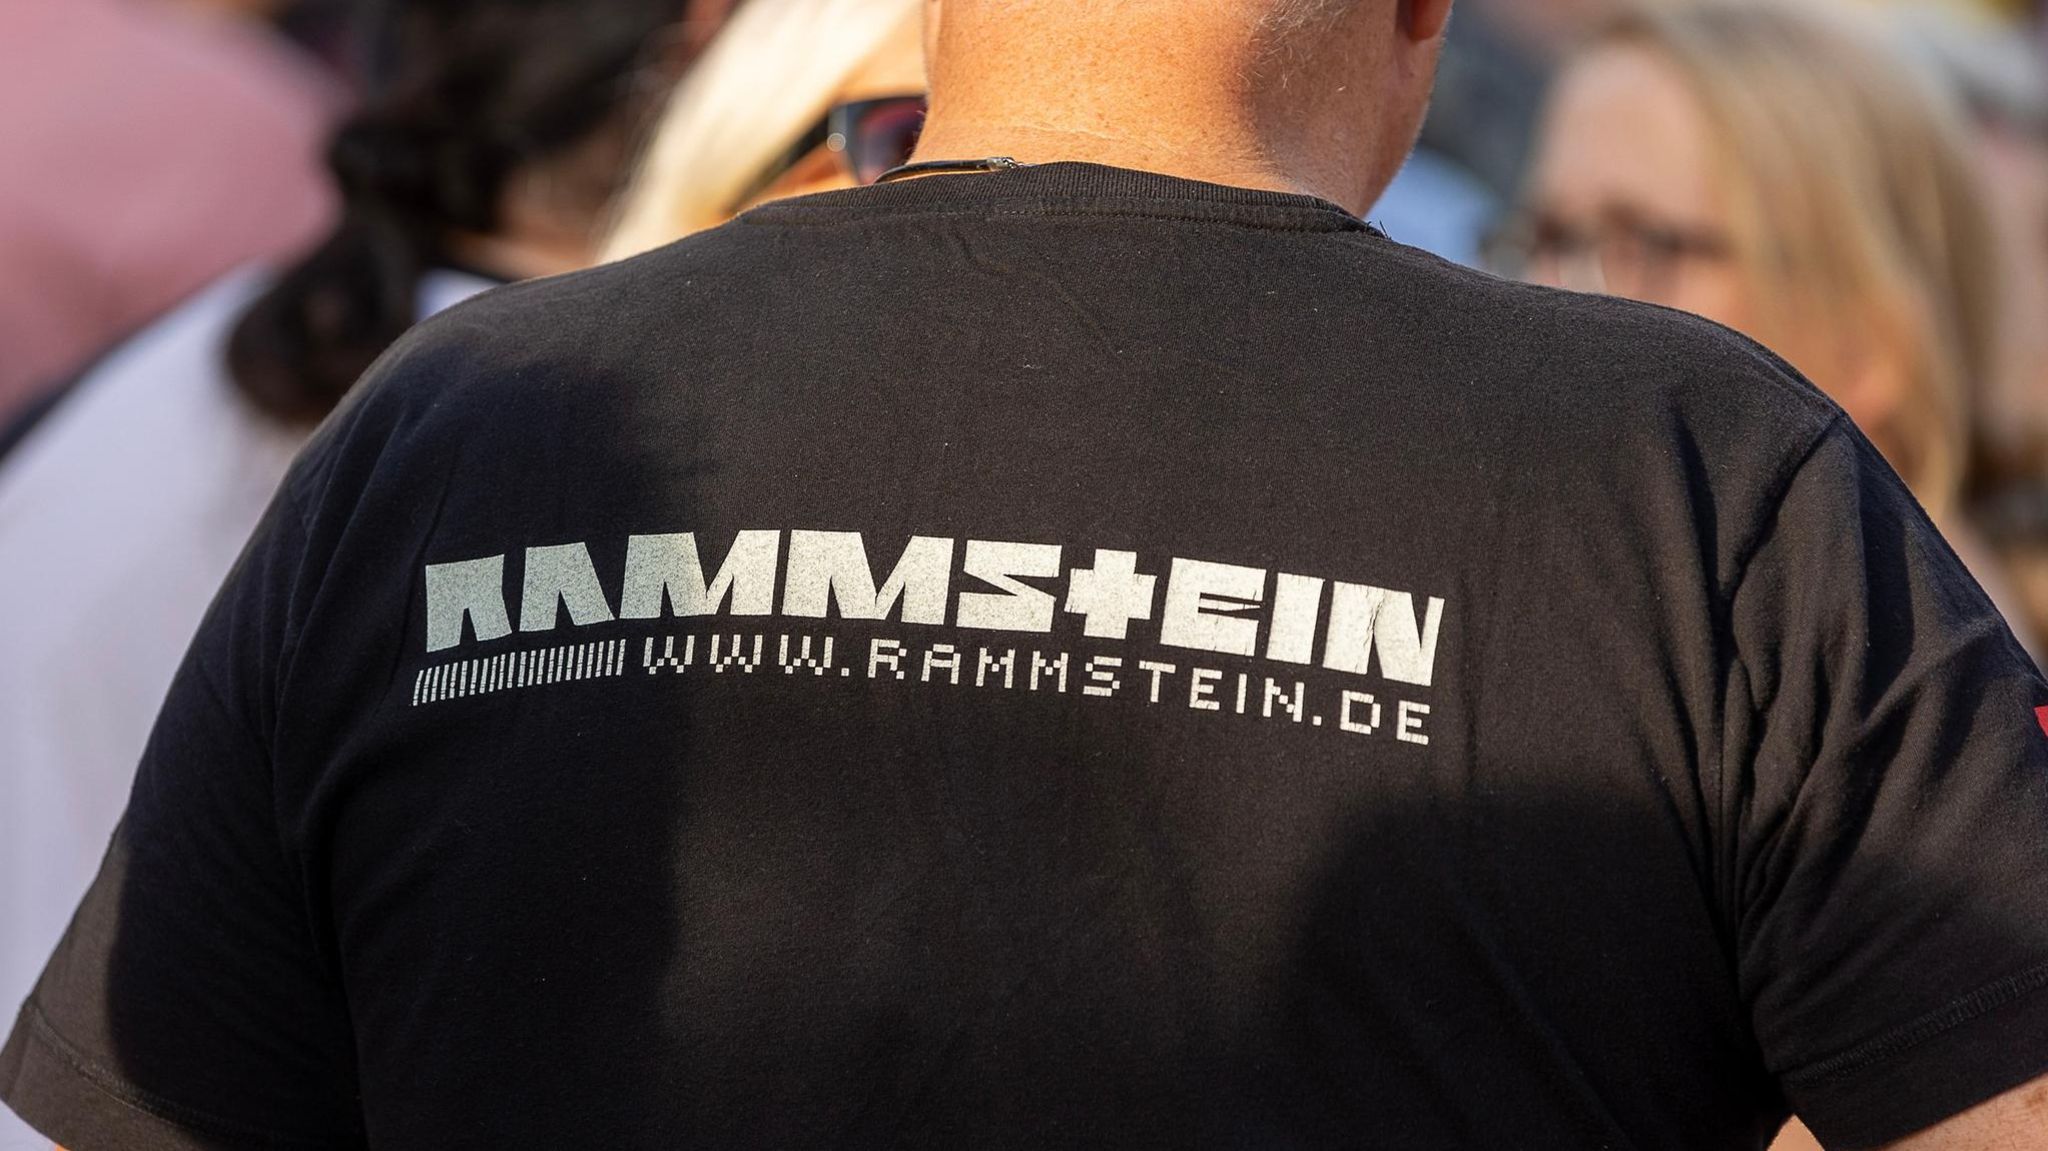 Row Zero T-Shirt Rammstein / Till Lindemann Protest-Shirt!